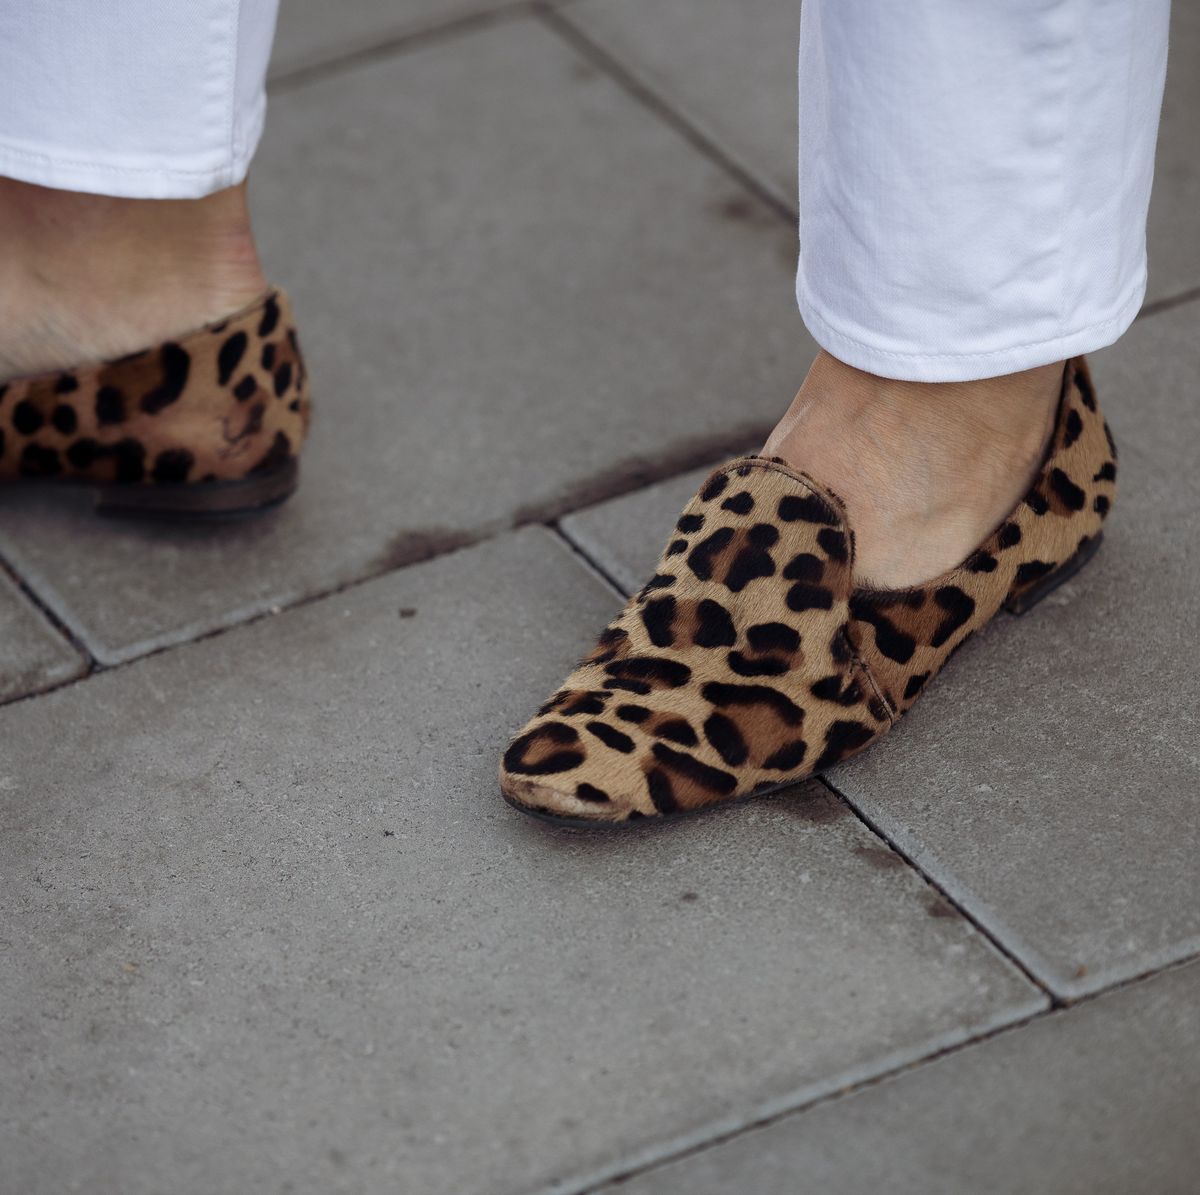 Zapatos 'animal print': la forma de llevar leopardo